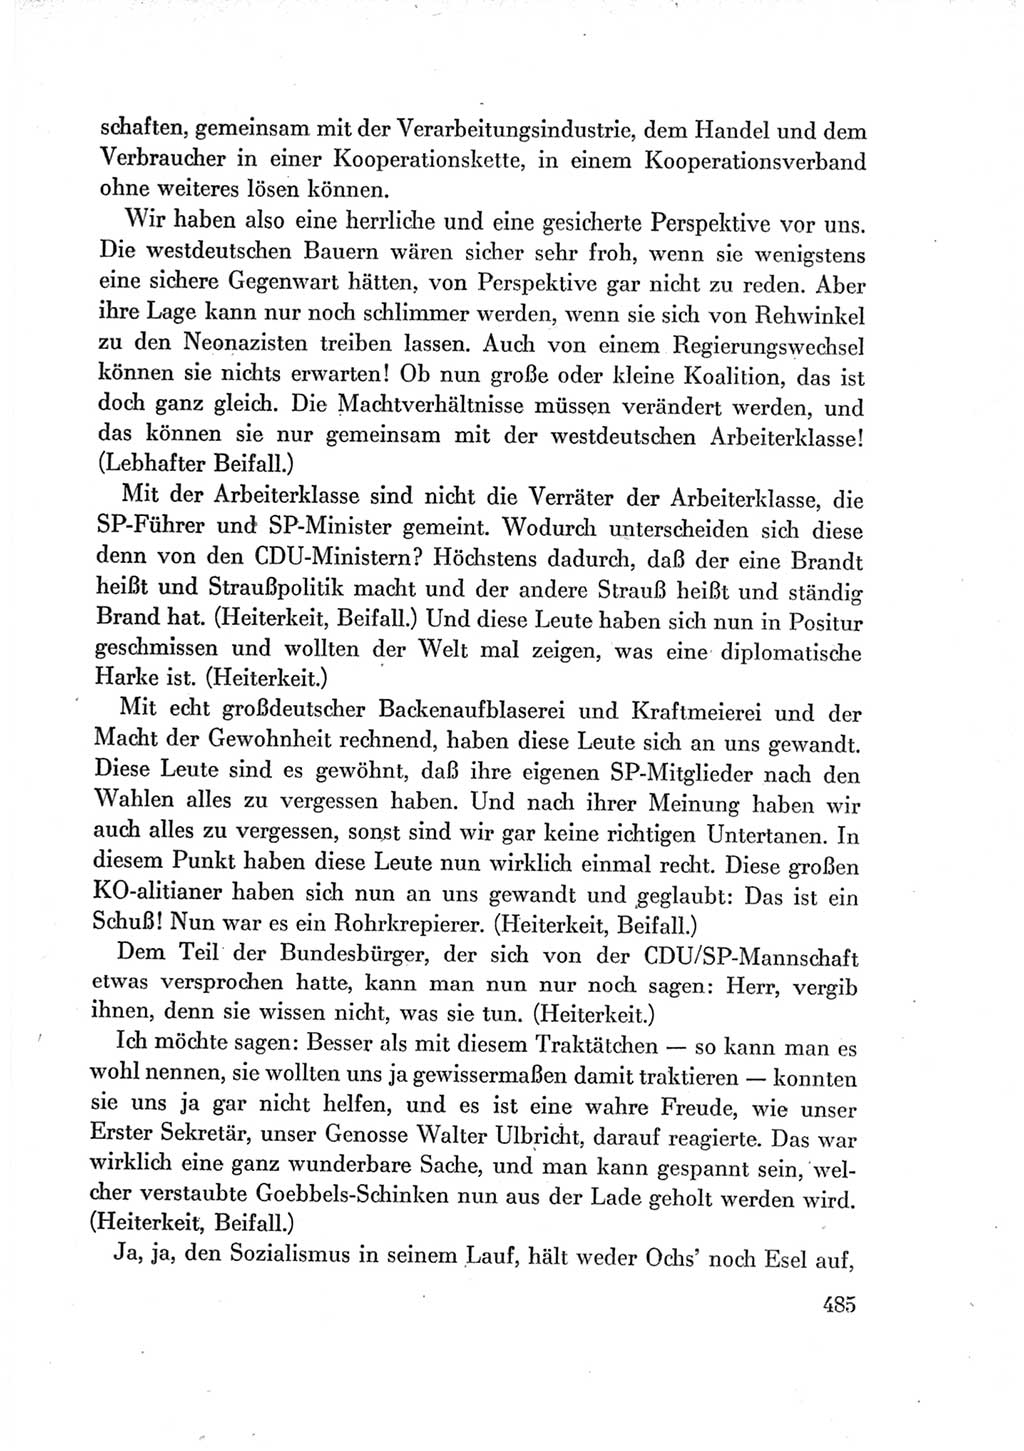 Protokoll der Verhandlungen des Ⅶ. Parteitages der Sozialistischen Einheitspartei Deutschlands (SED) [Deutsche Demokratische Republik (DDR)] 1967, Band Ⅰ, Seite 485 (Prot. Verh. Ⅶ. PT SED DDR 1967, Bd. Ⅰ, S. 485)